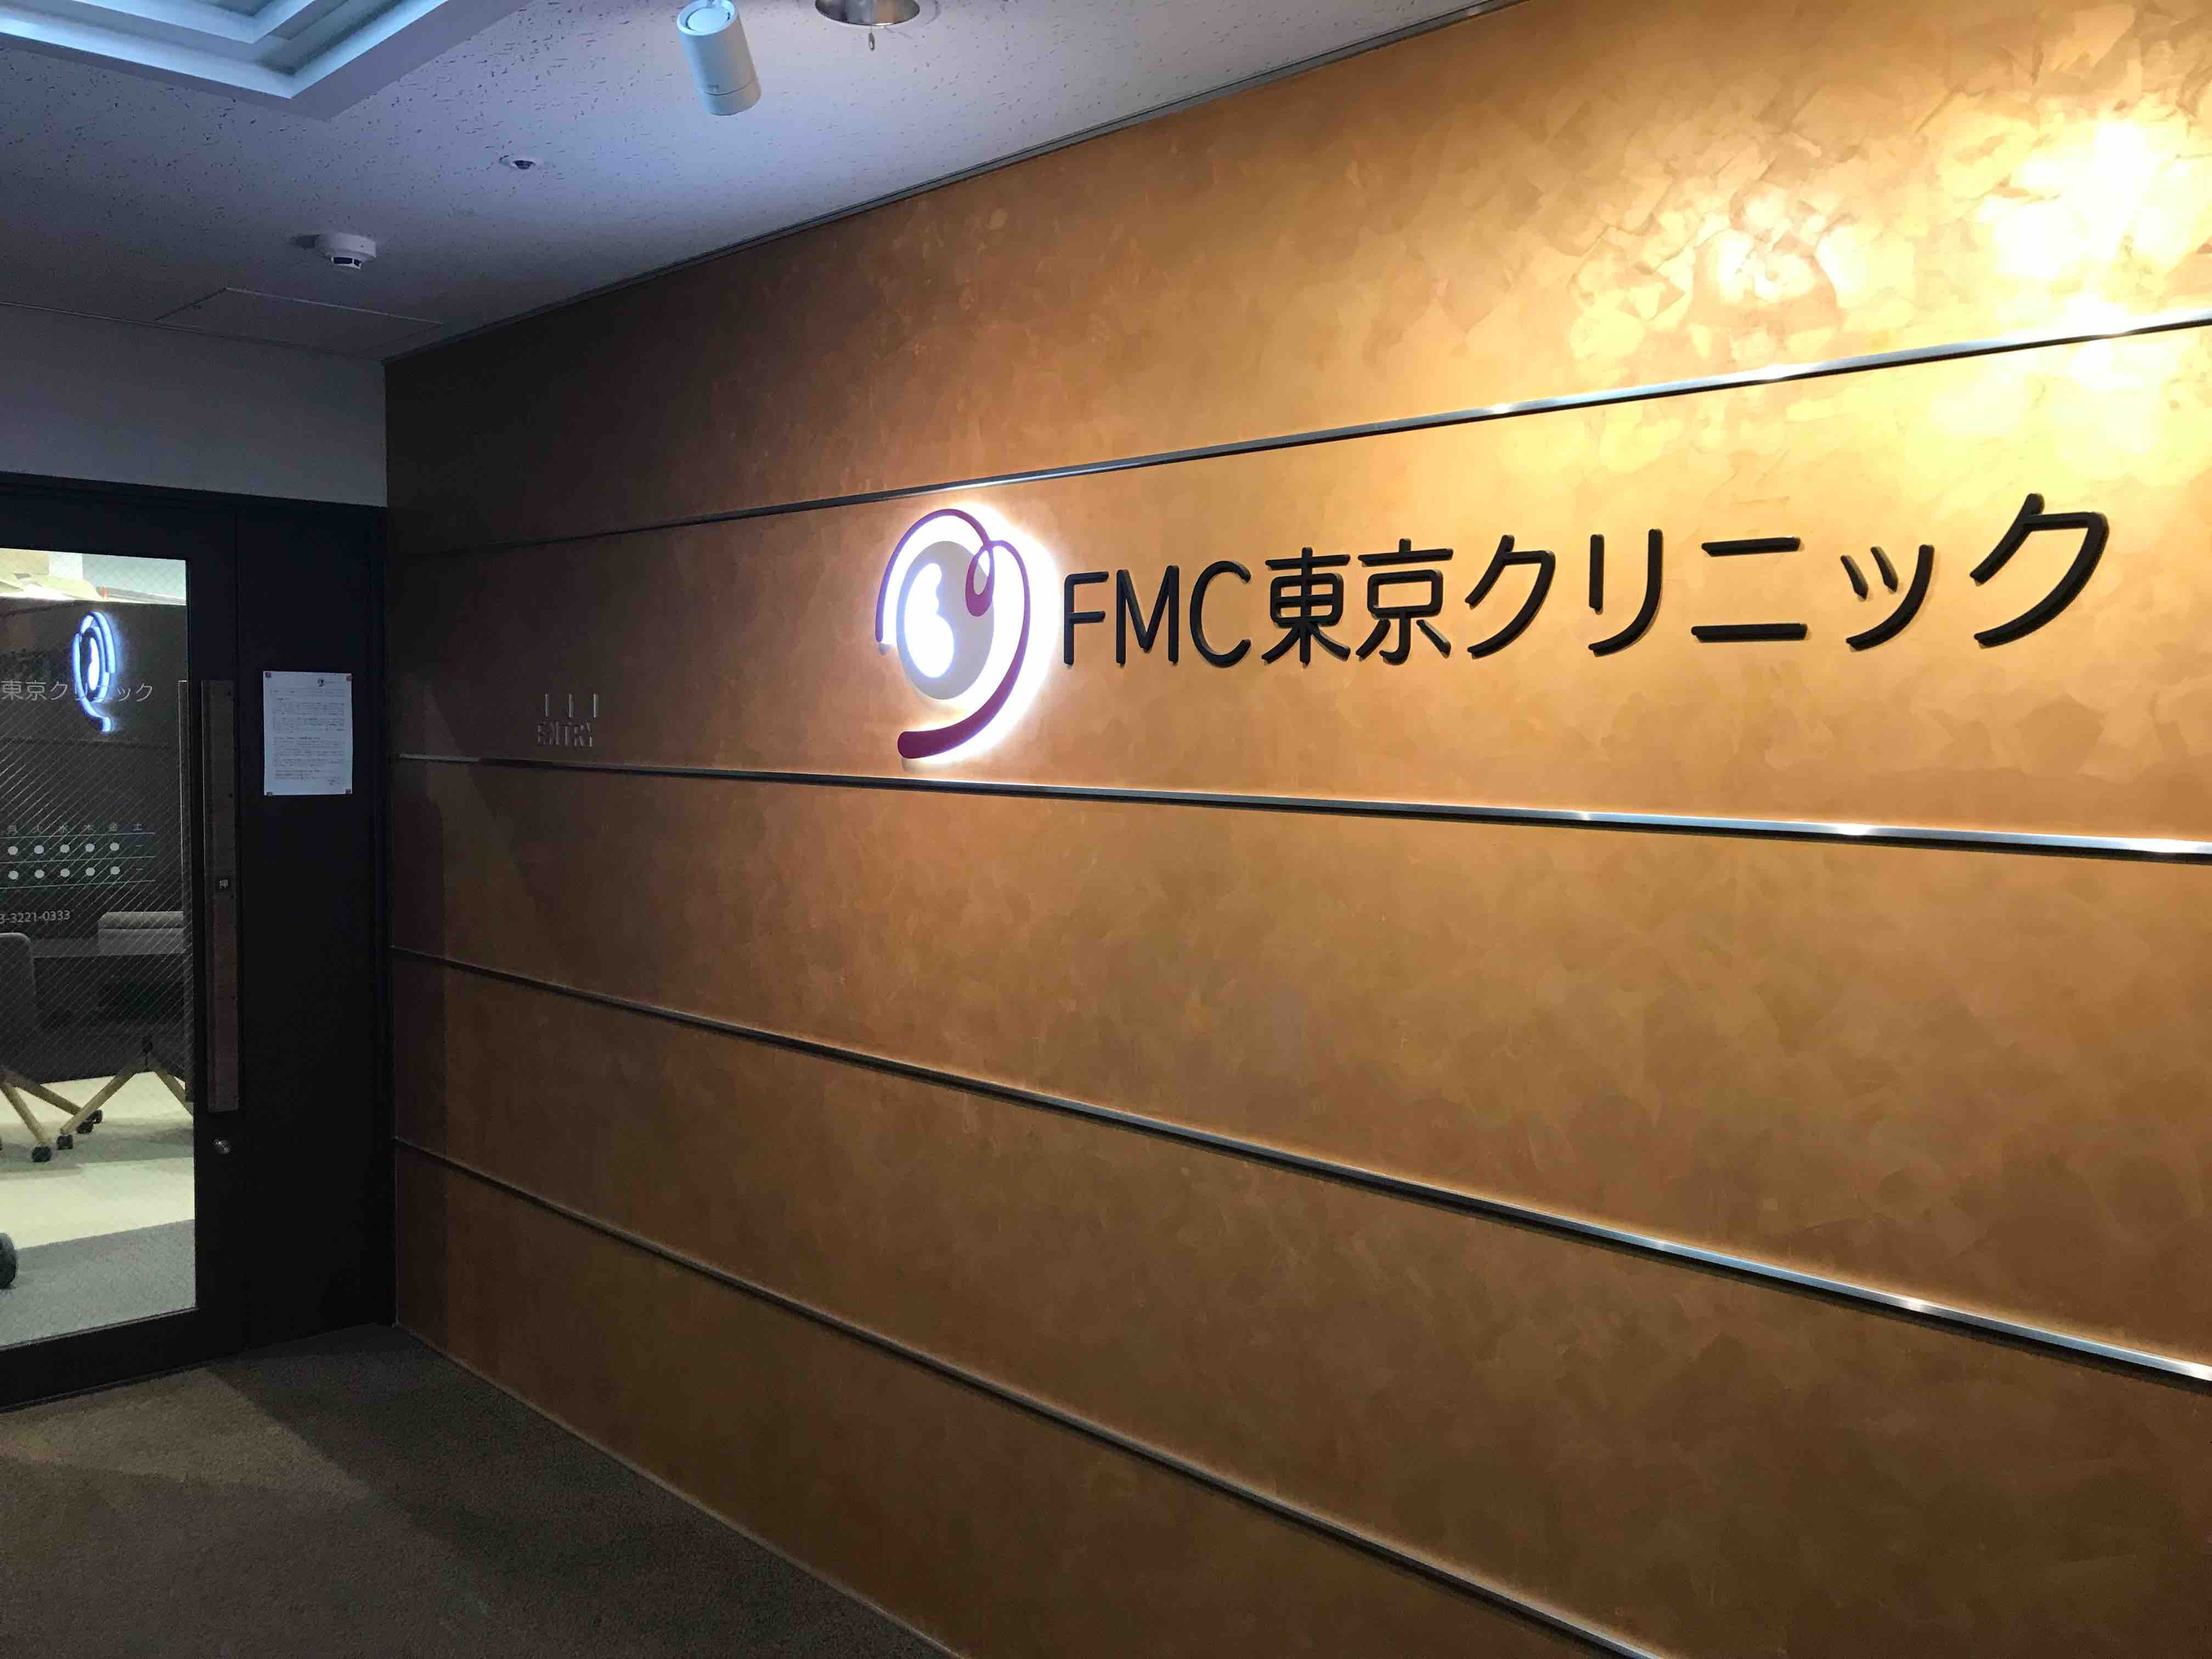 FMC東京クリニック、FMFコンバインド・プラス検査、胎児ドック